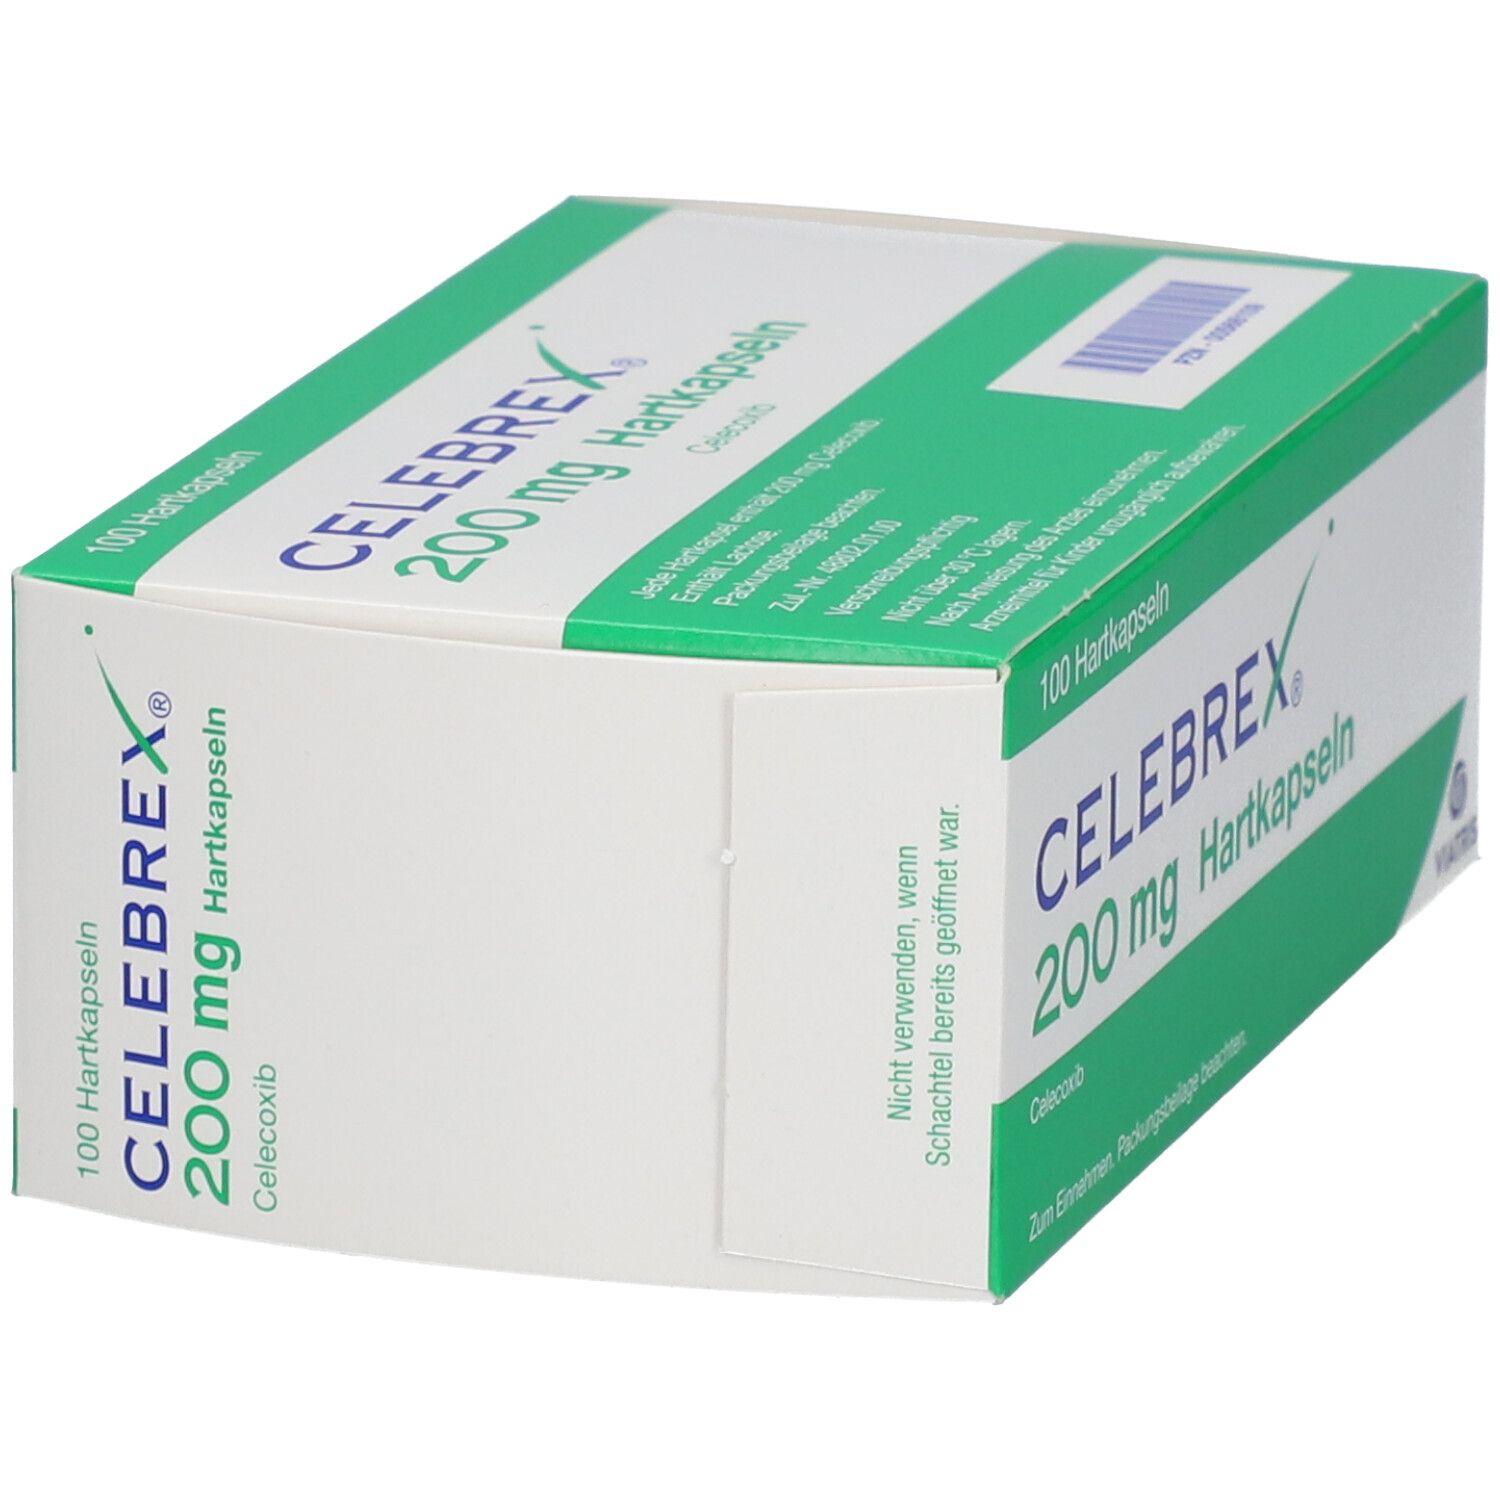 Celebrex® 200 mg